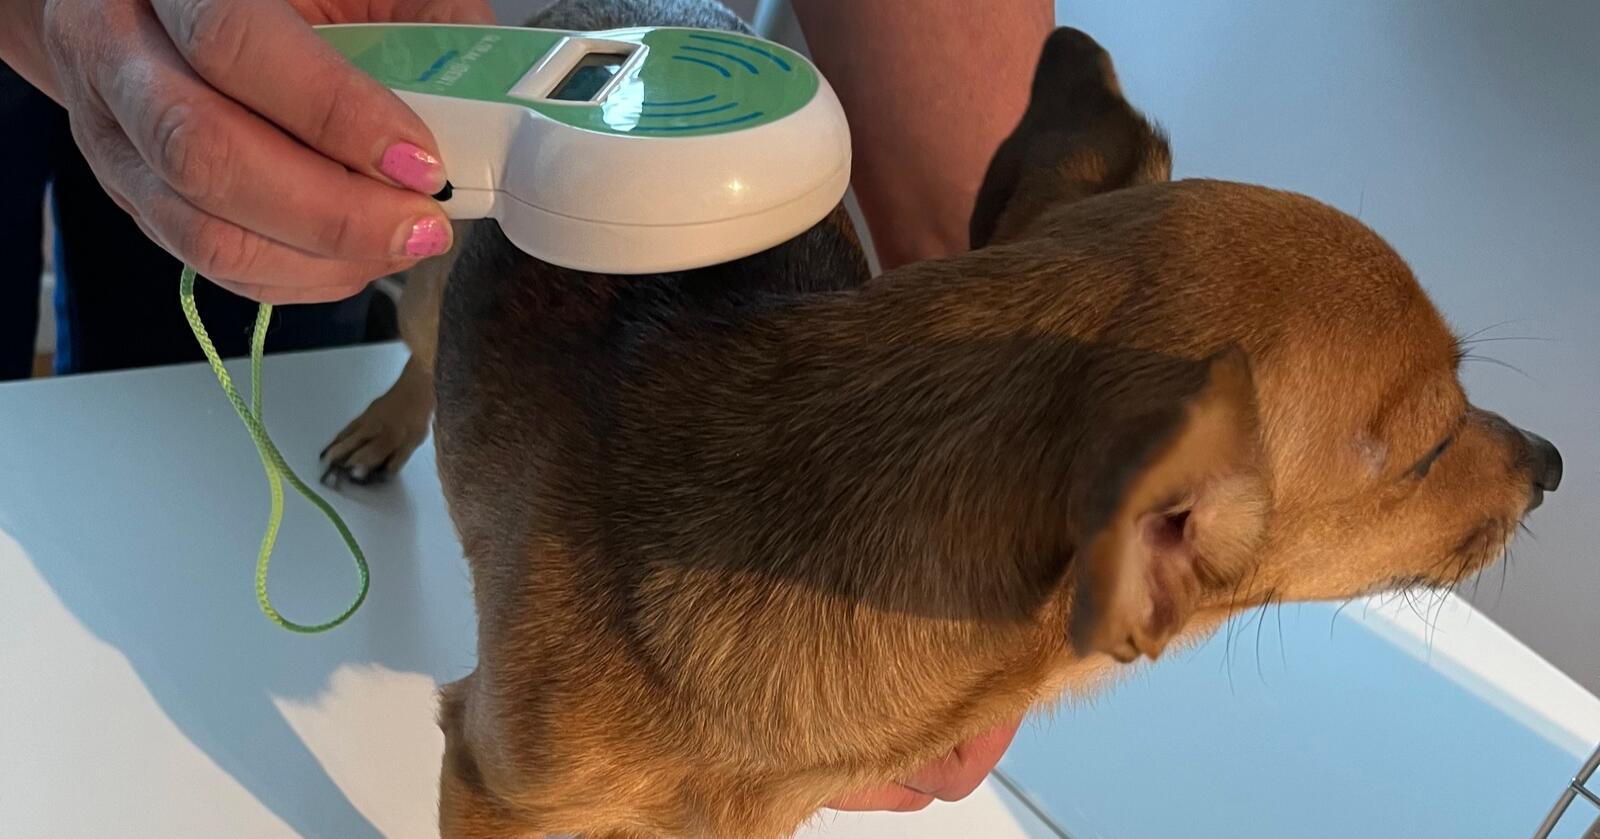 Sjekk: Mattilsynet sjekker om hunden fra Ukraina har chip, og kontrollerer eventuelle papirer den måtte ha. (Foto: Mattilsynet)